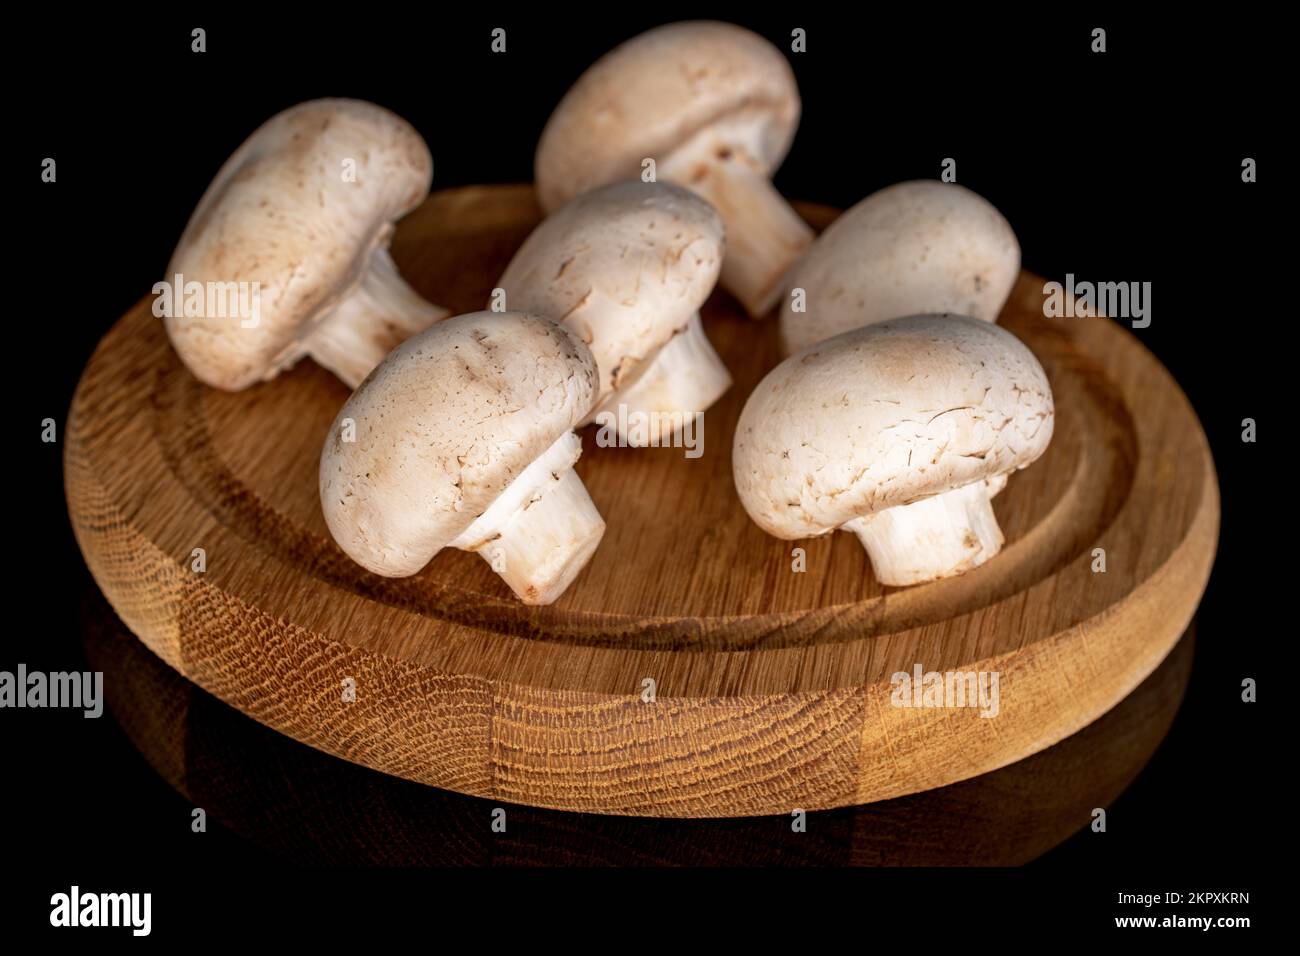 Diversi funghi champignon freschi e biologici interi su un vassoio rotondo di bambù, primo piano, su sfondo nero. Foto Stock